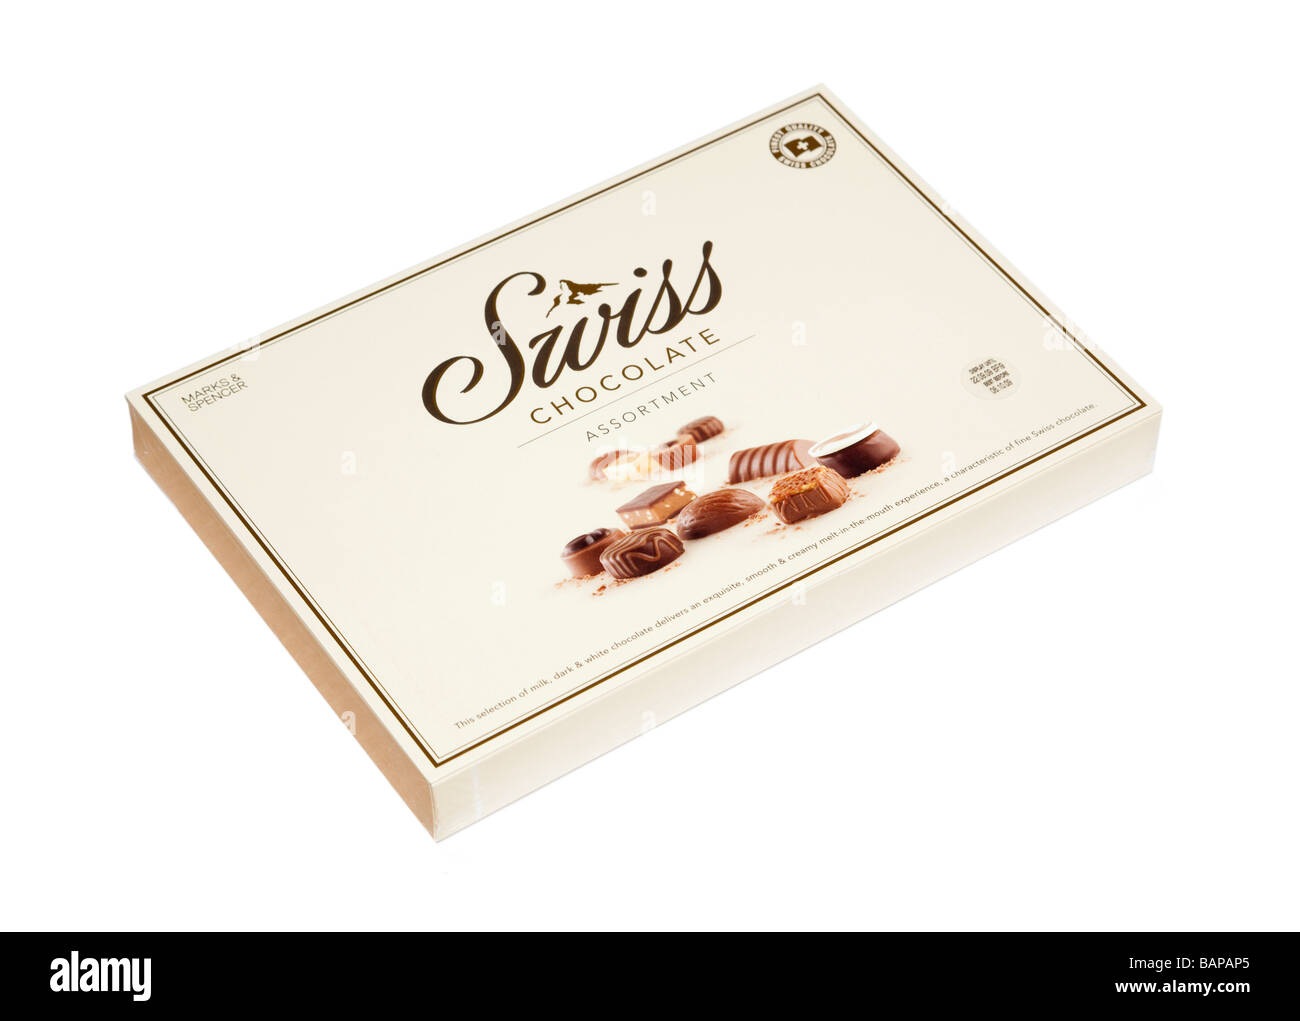 Scatola di cioccolatini svizzeri Foto Stock